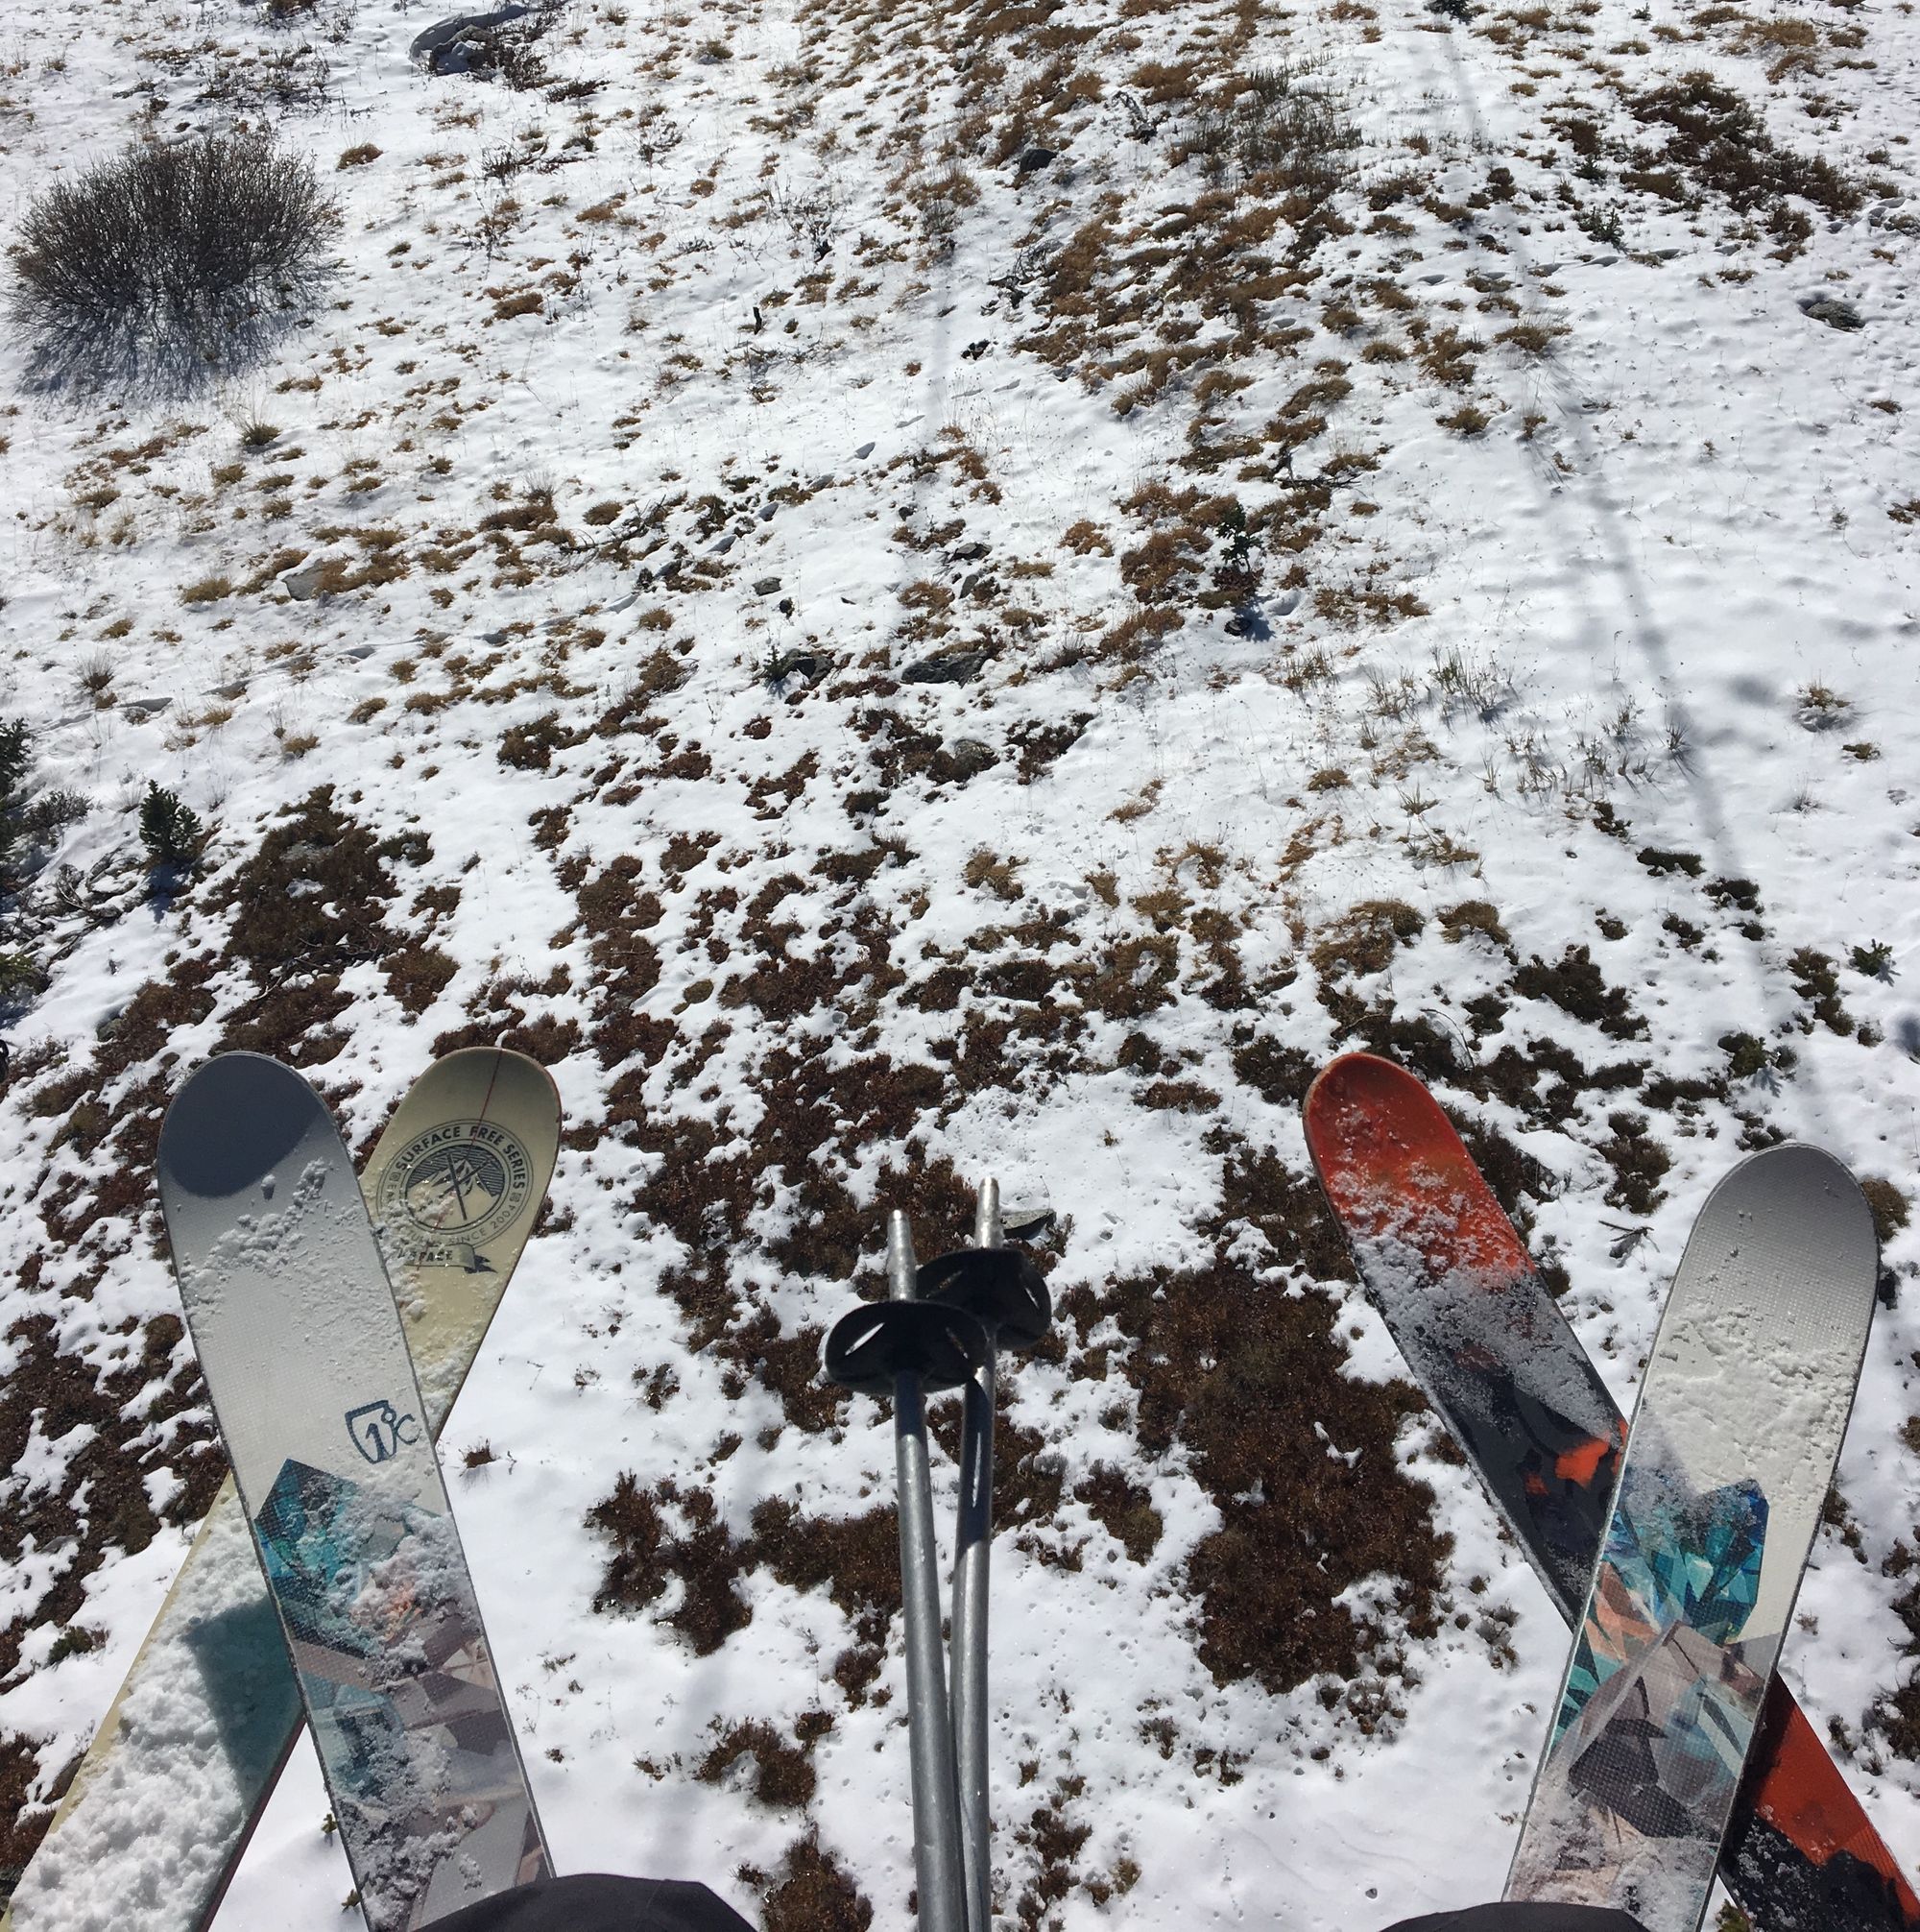 Day 1: Why We Love Arapahoe Basin Ski Area